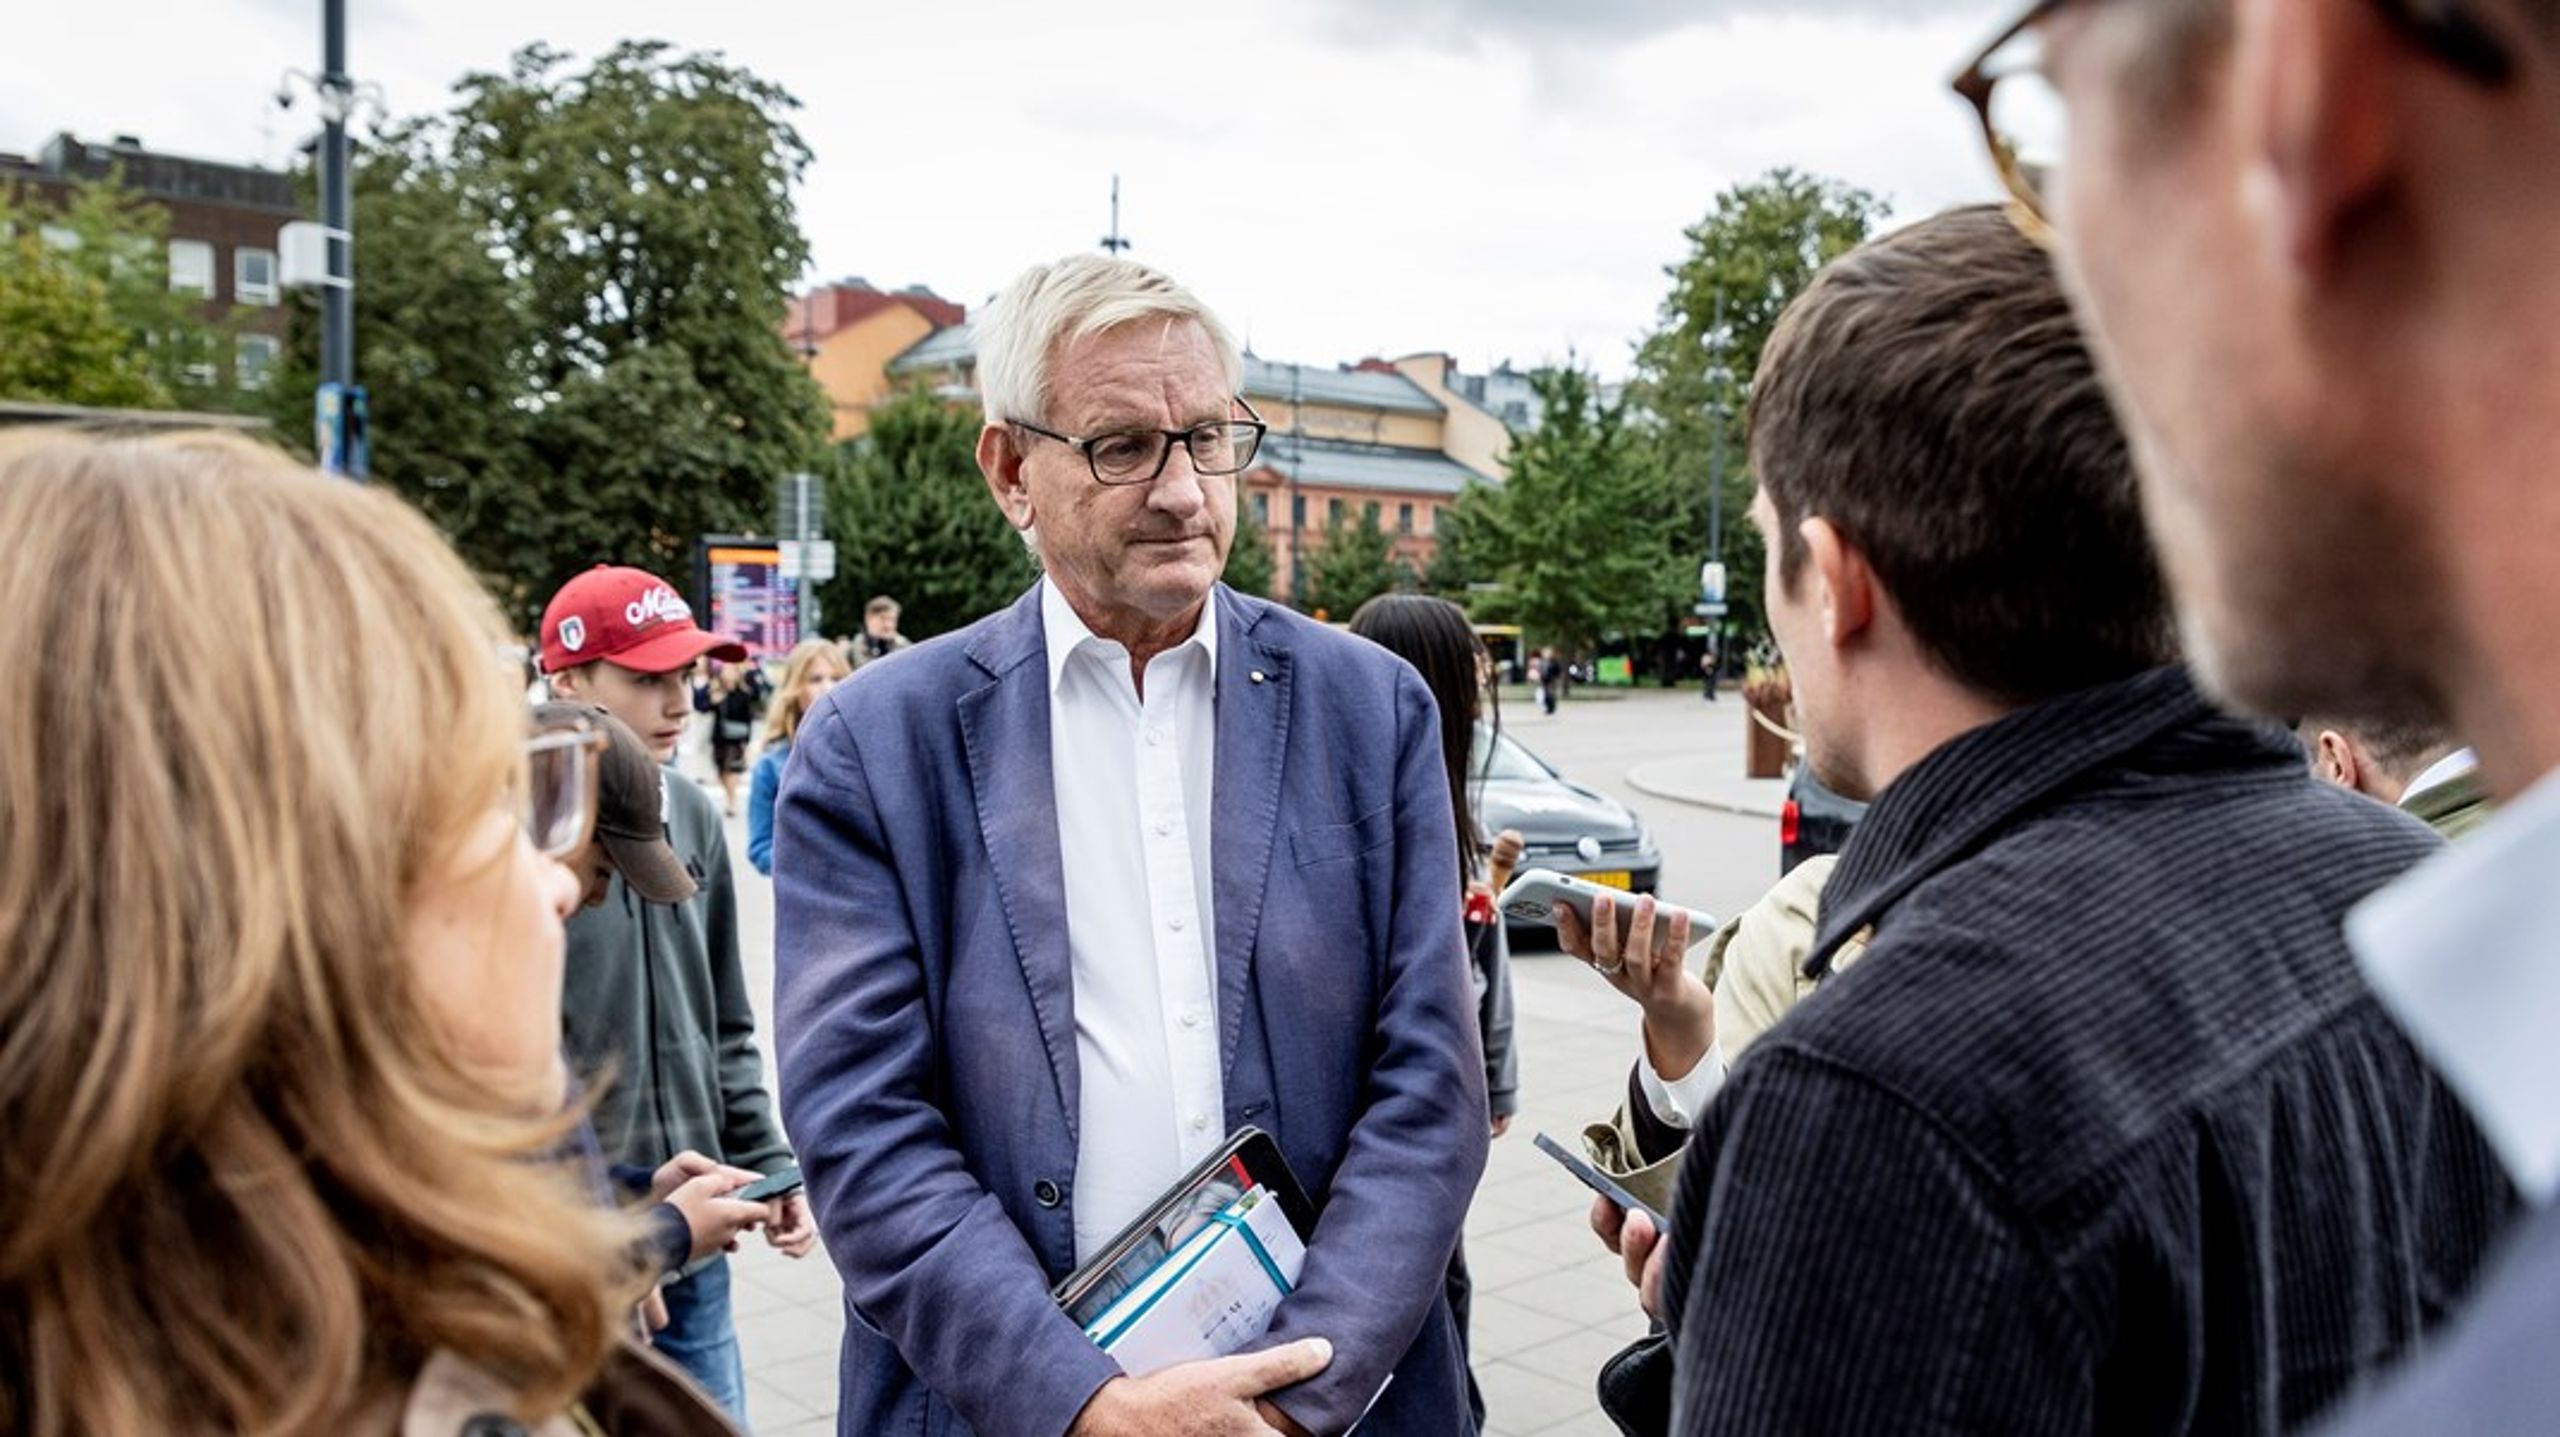 Ideellt arbetande. Carl Bildt fick inte betalt för uppdraget att representera Sverige vid presidentinstallationen i Turkiet.